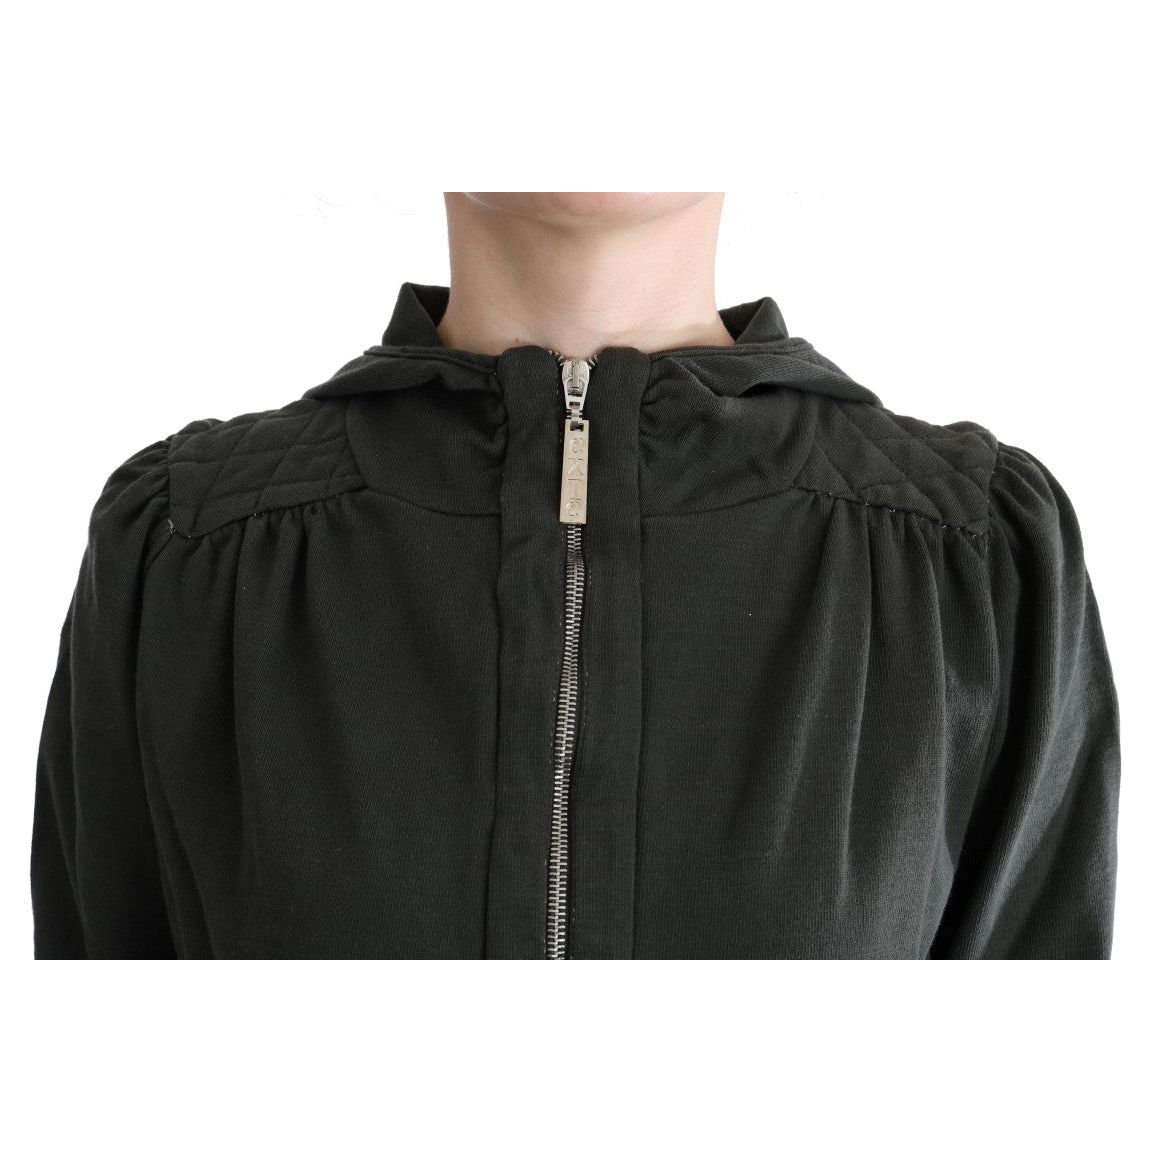 Exte | Gray Top Hooded Cotton Zipper Sweater | McRichard Designer Brands